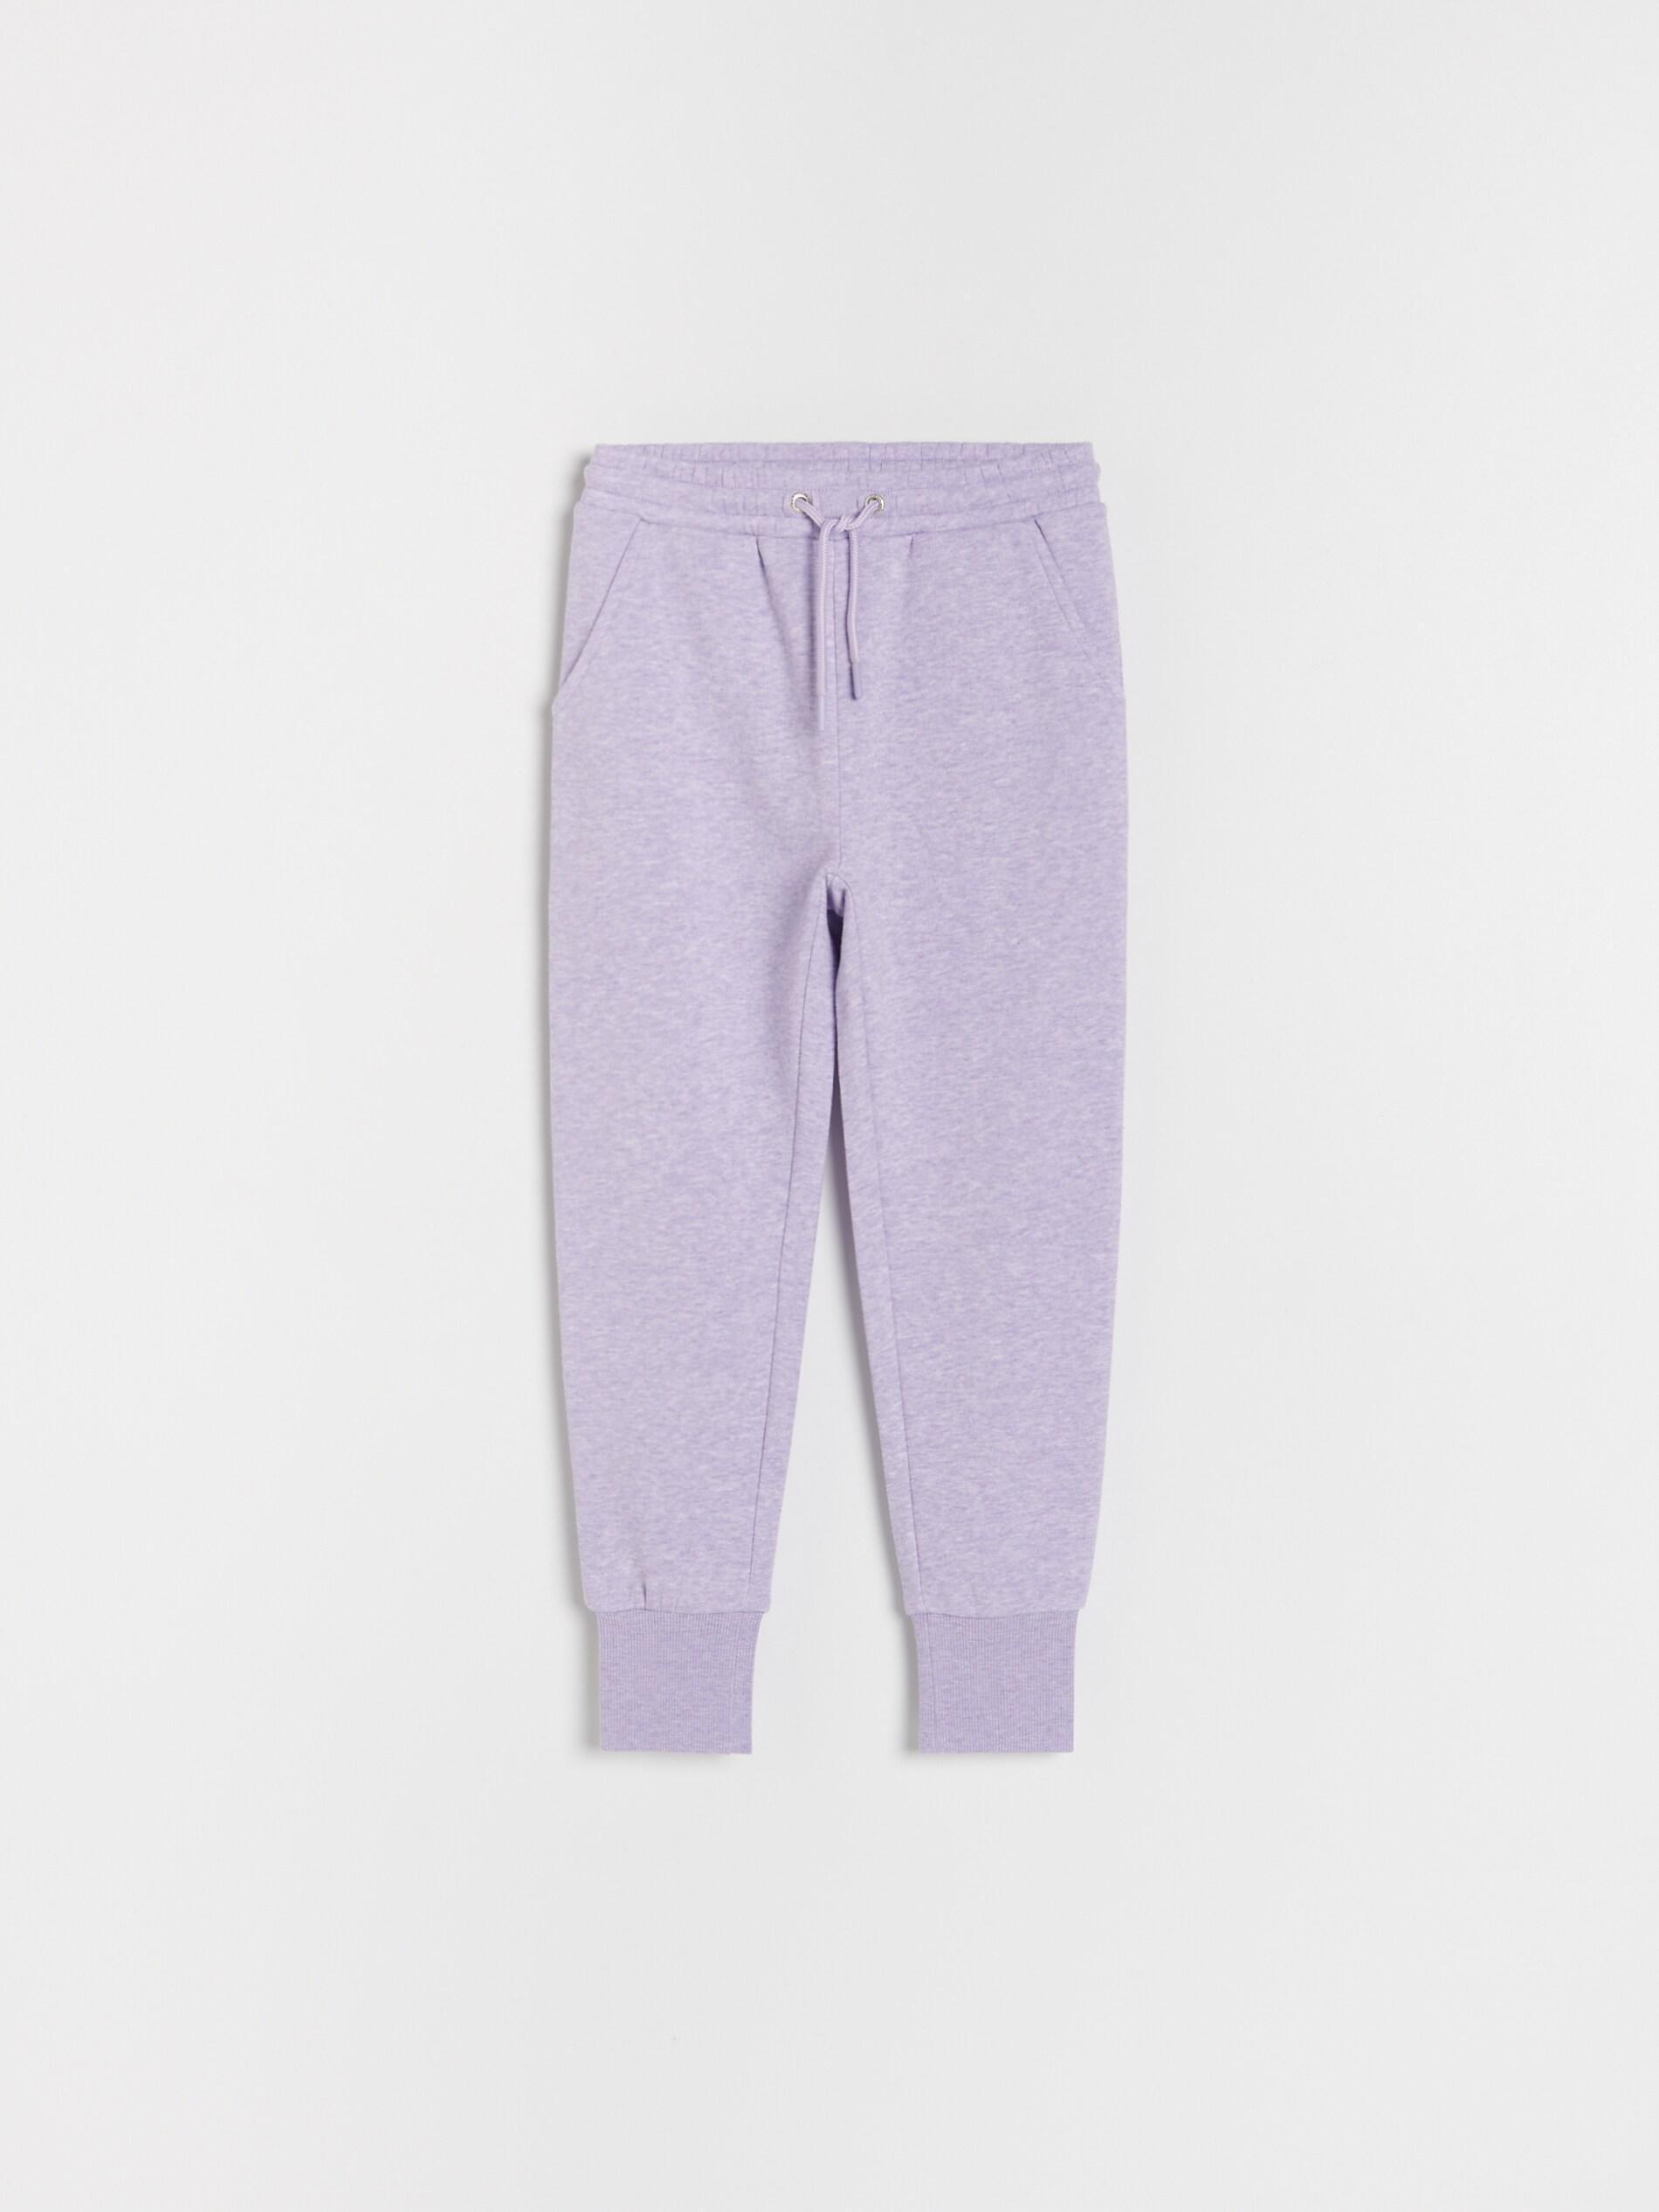 Reserved - Lavender Sweatpants, Kids Girl